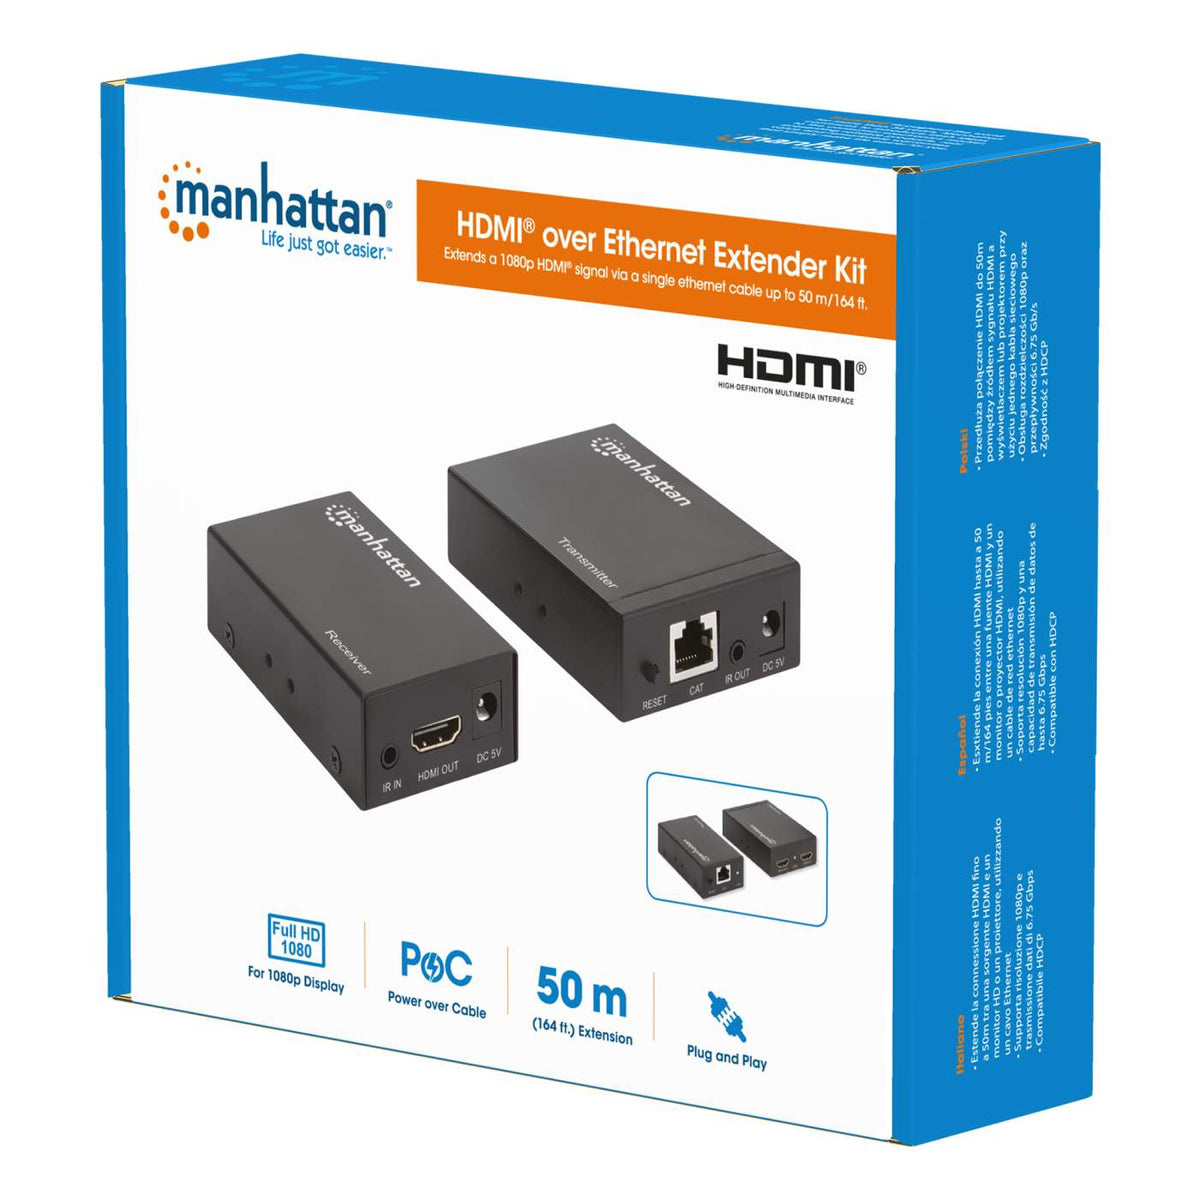 Træ Encyclopedia national flag Manhattan 1080p HDMI over Ethernet Extender Kit (207461)